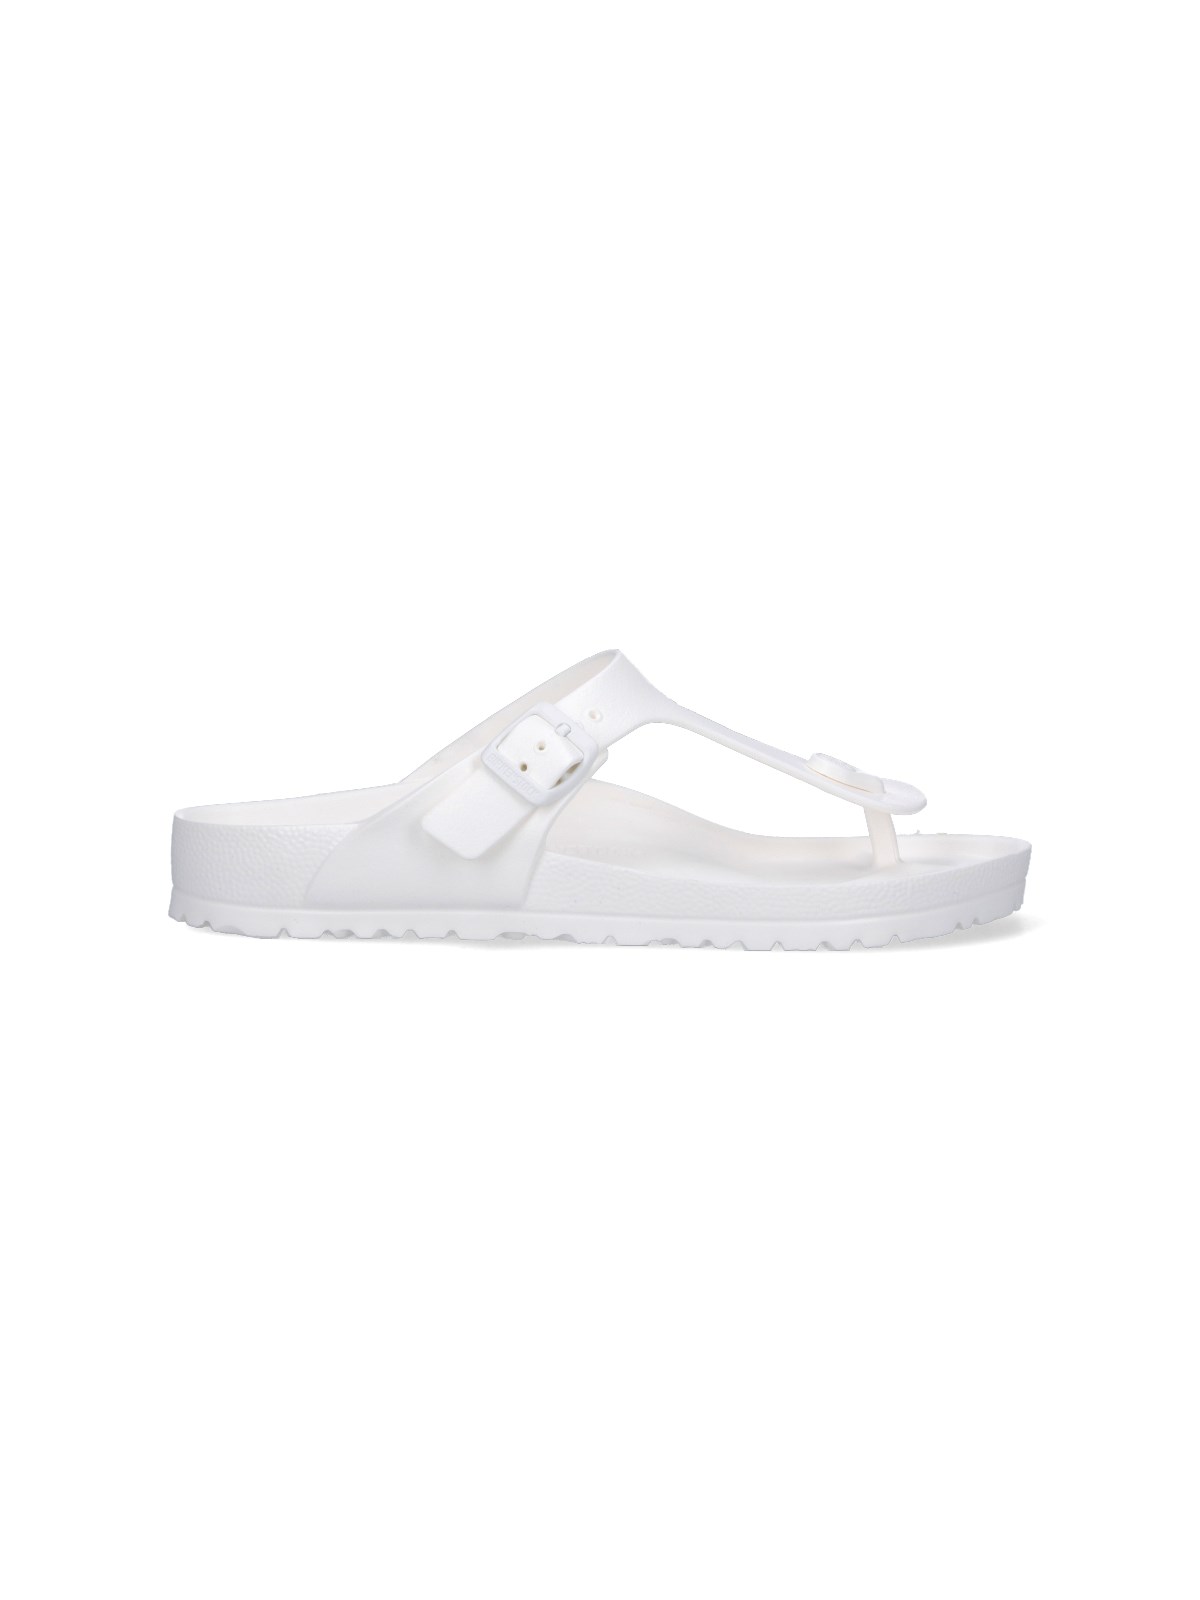 Shop Birkenstock Thong Sandals "gizeh Essentials" In White